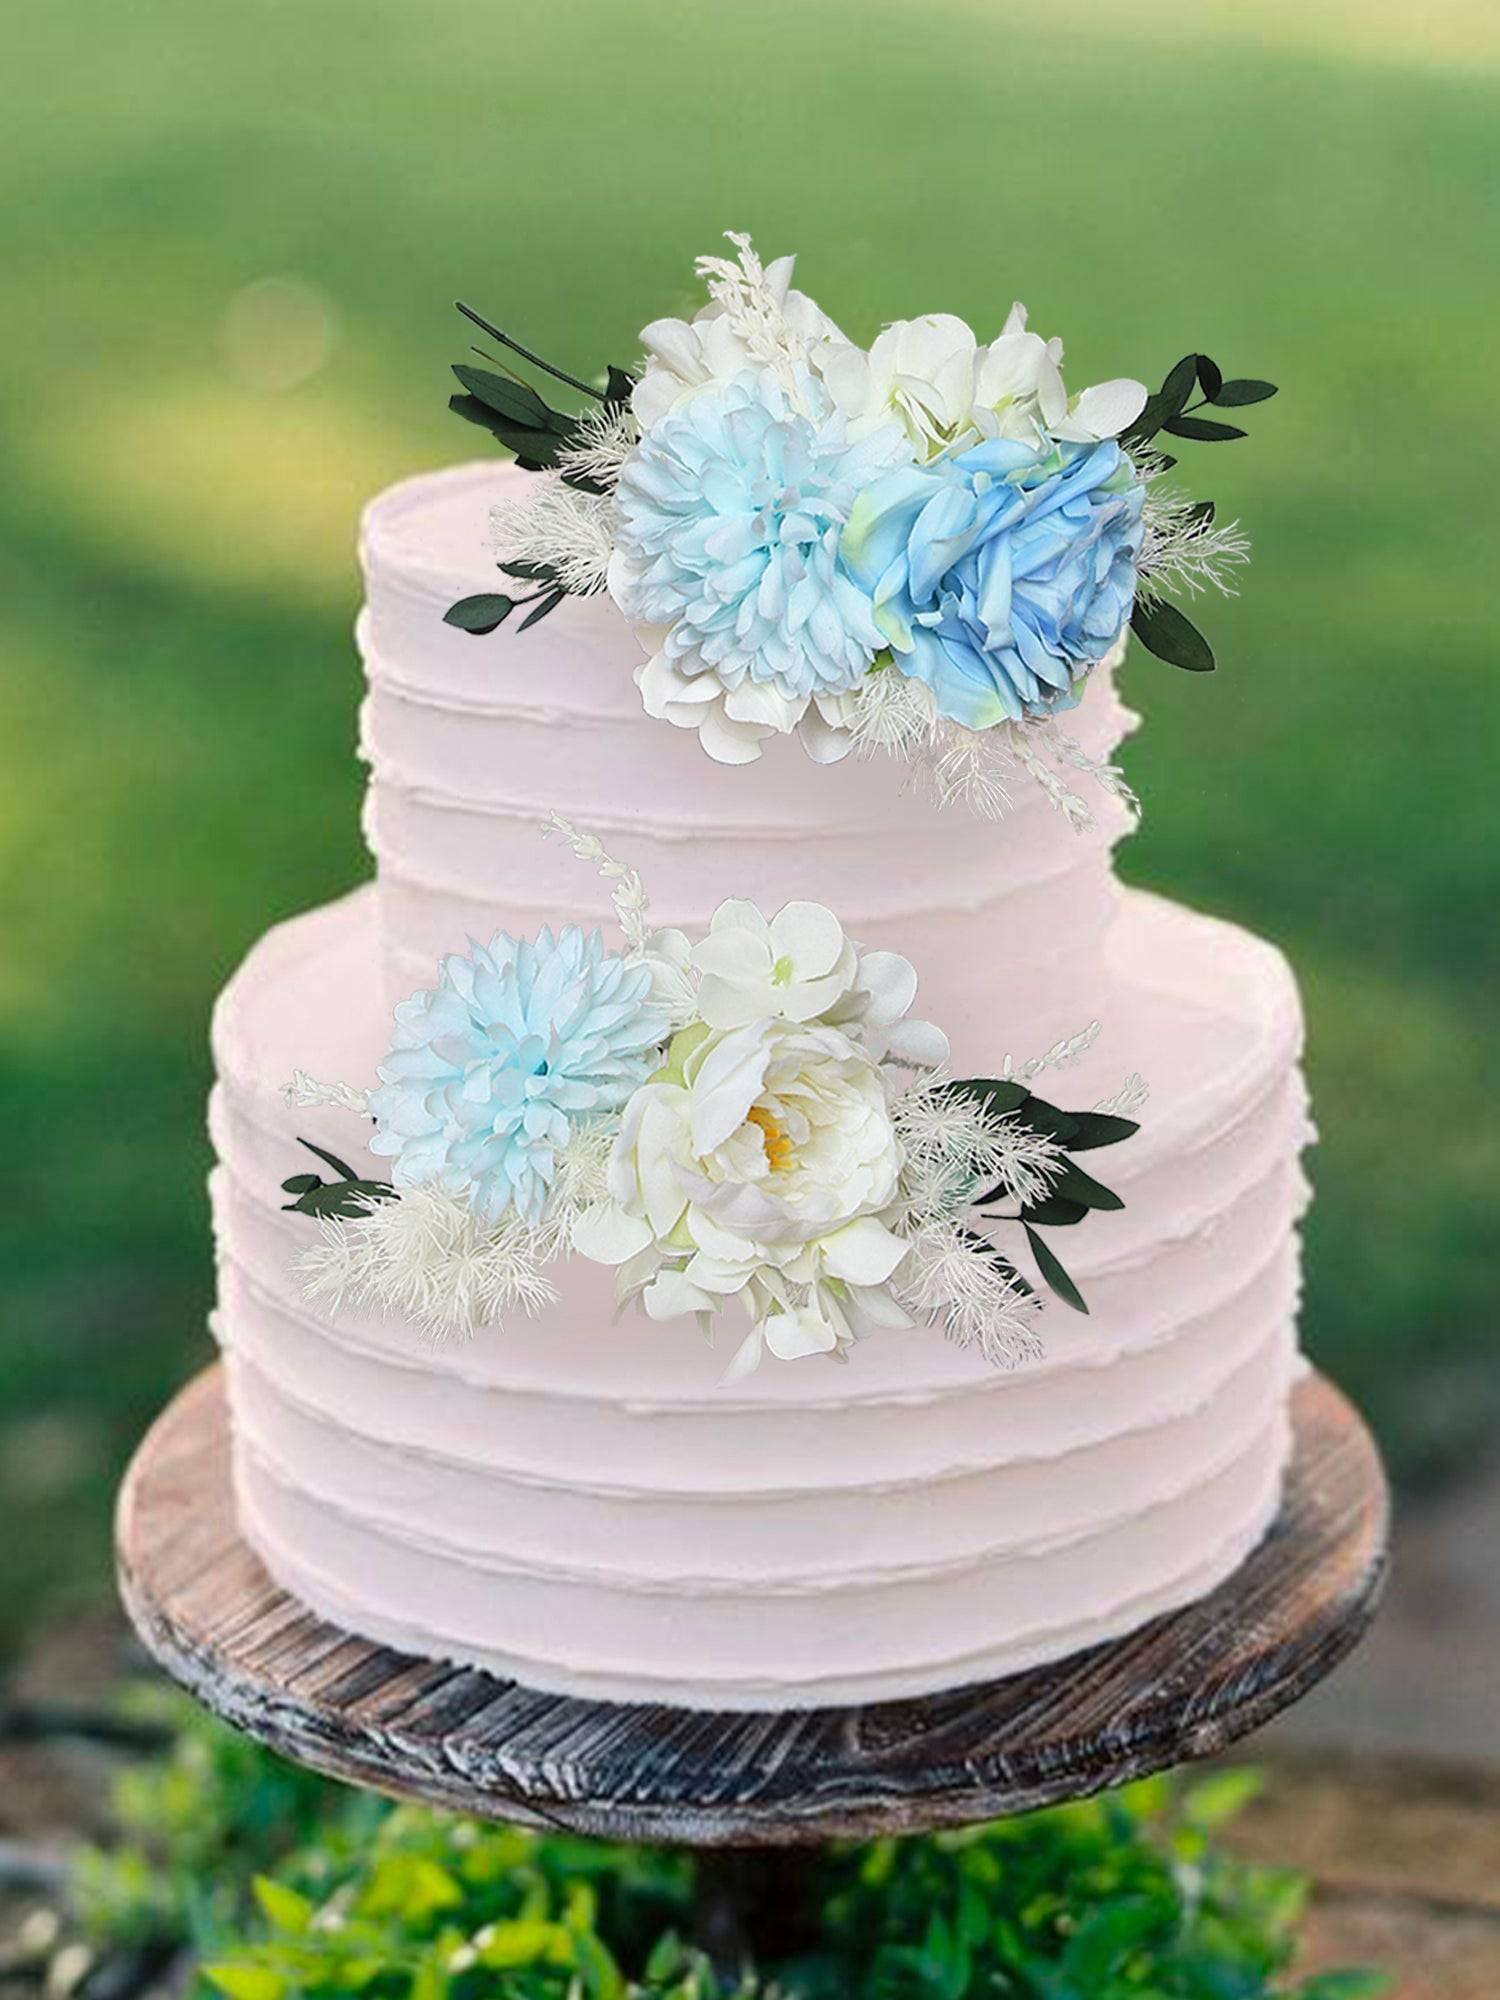 3Pcs Baby Blue Cake Topper Flowers Set - Rinlong Flower